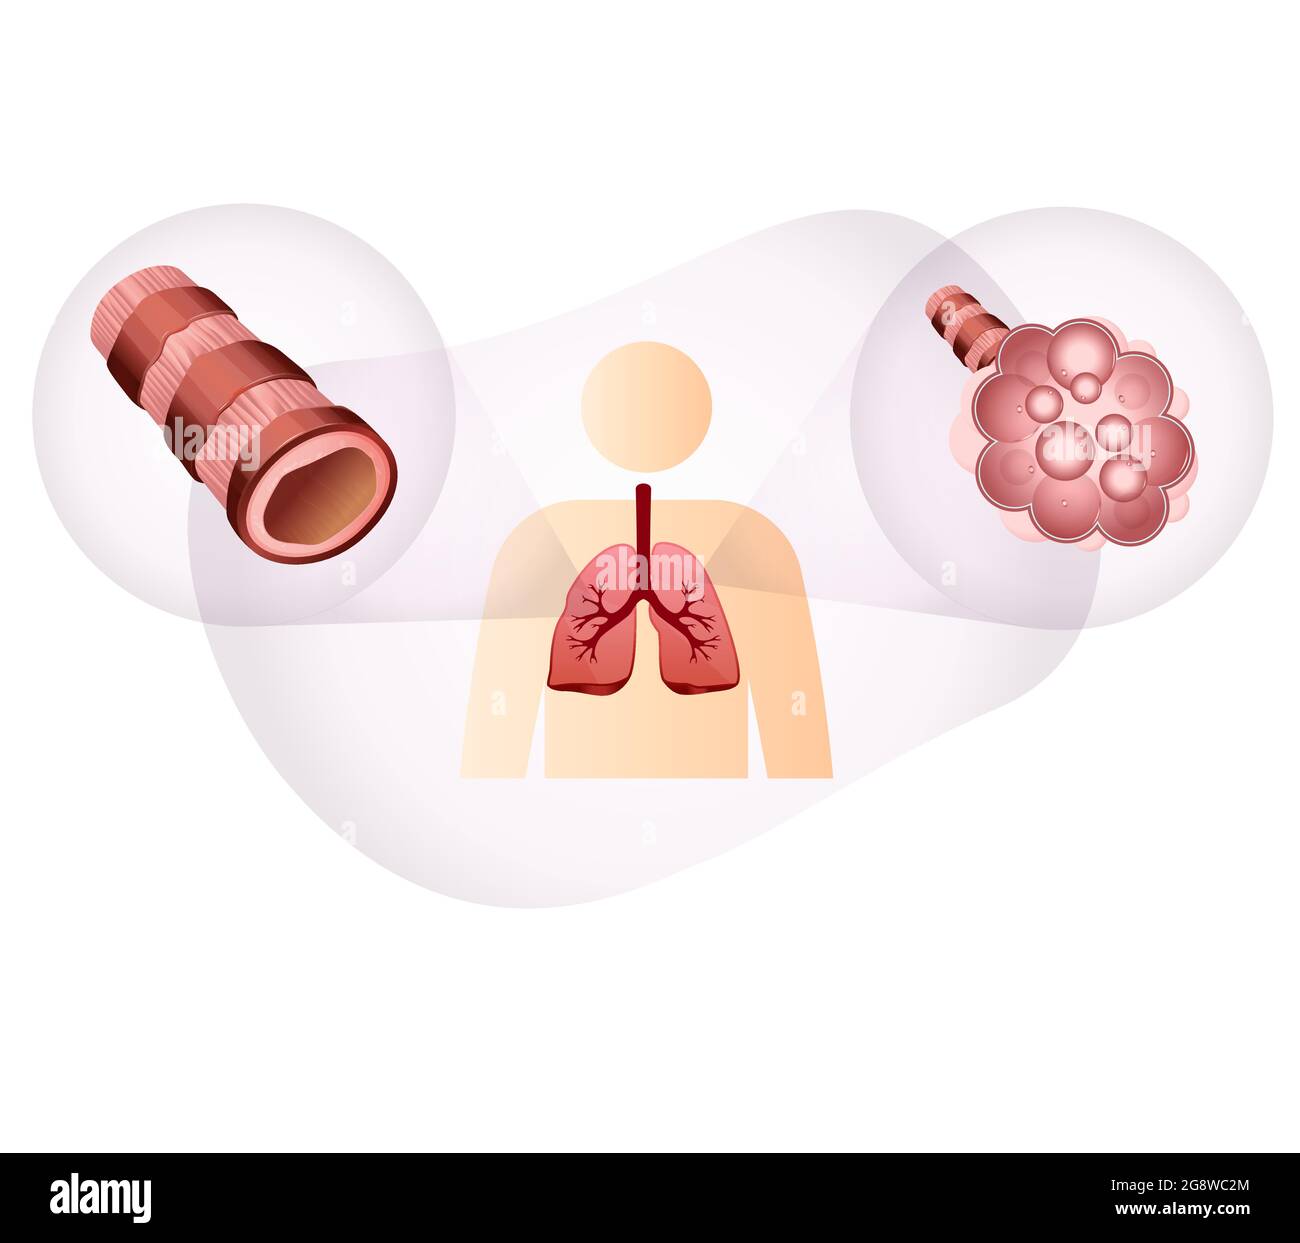 Bronchioli e alveoli nei polmoni umani - Stock Illustration as EPS 10 file Illustrazione Vettoriale